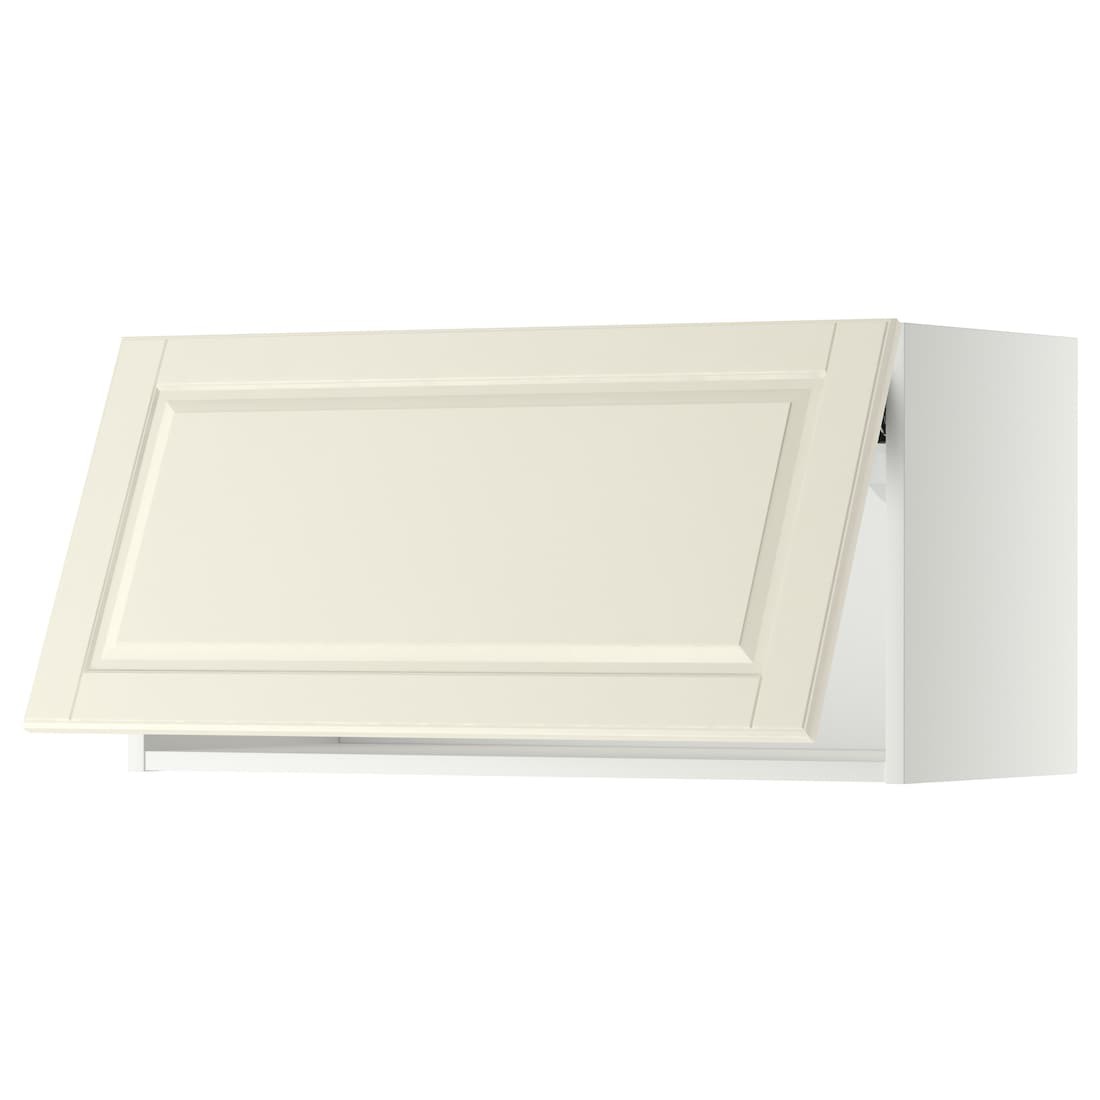 METOD МЕТОД Навесной горизонтальный шкаф, белый / Bodbyn кремовый, 80x40 см